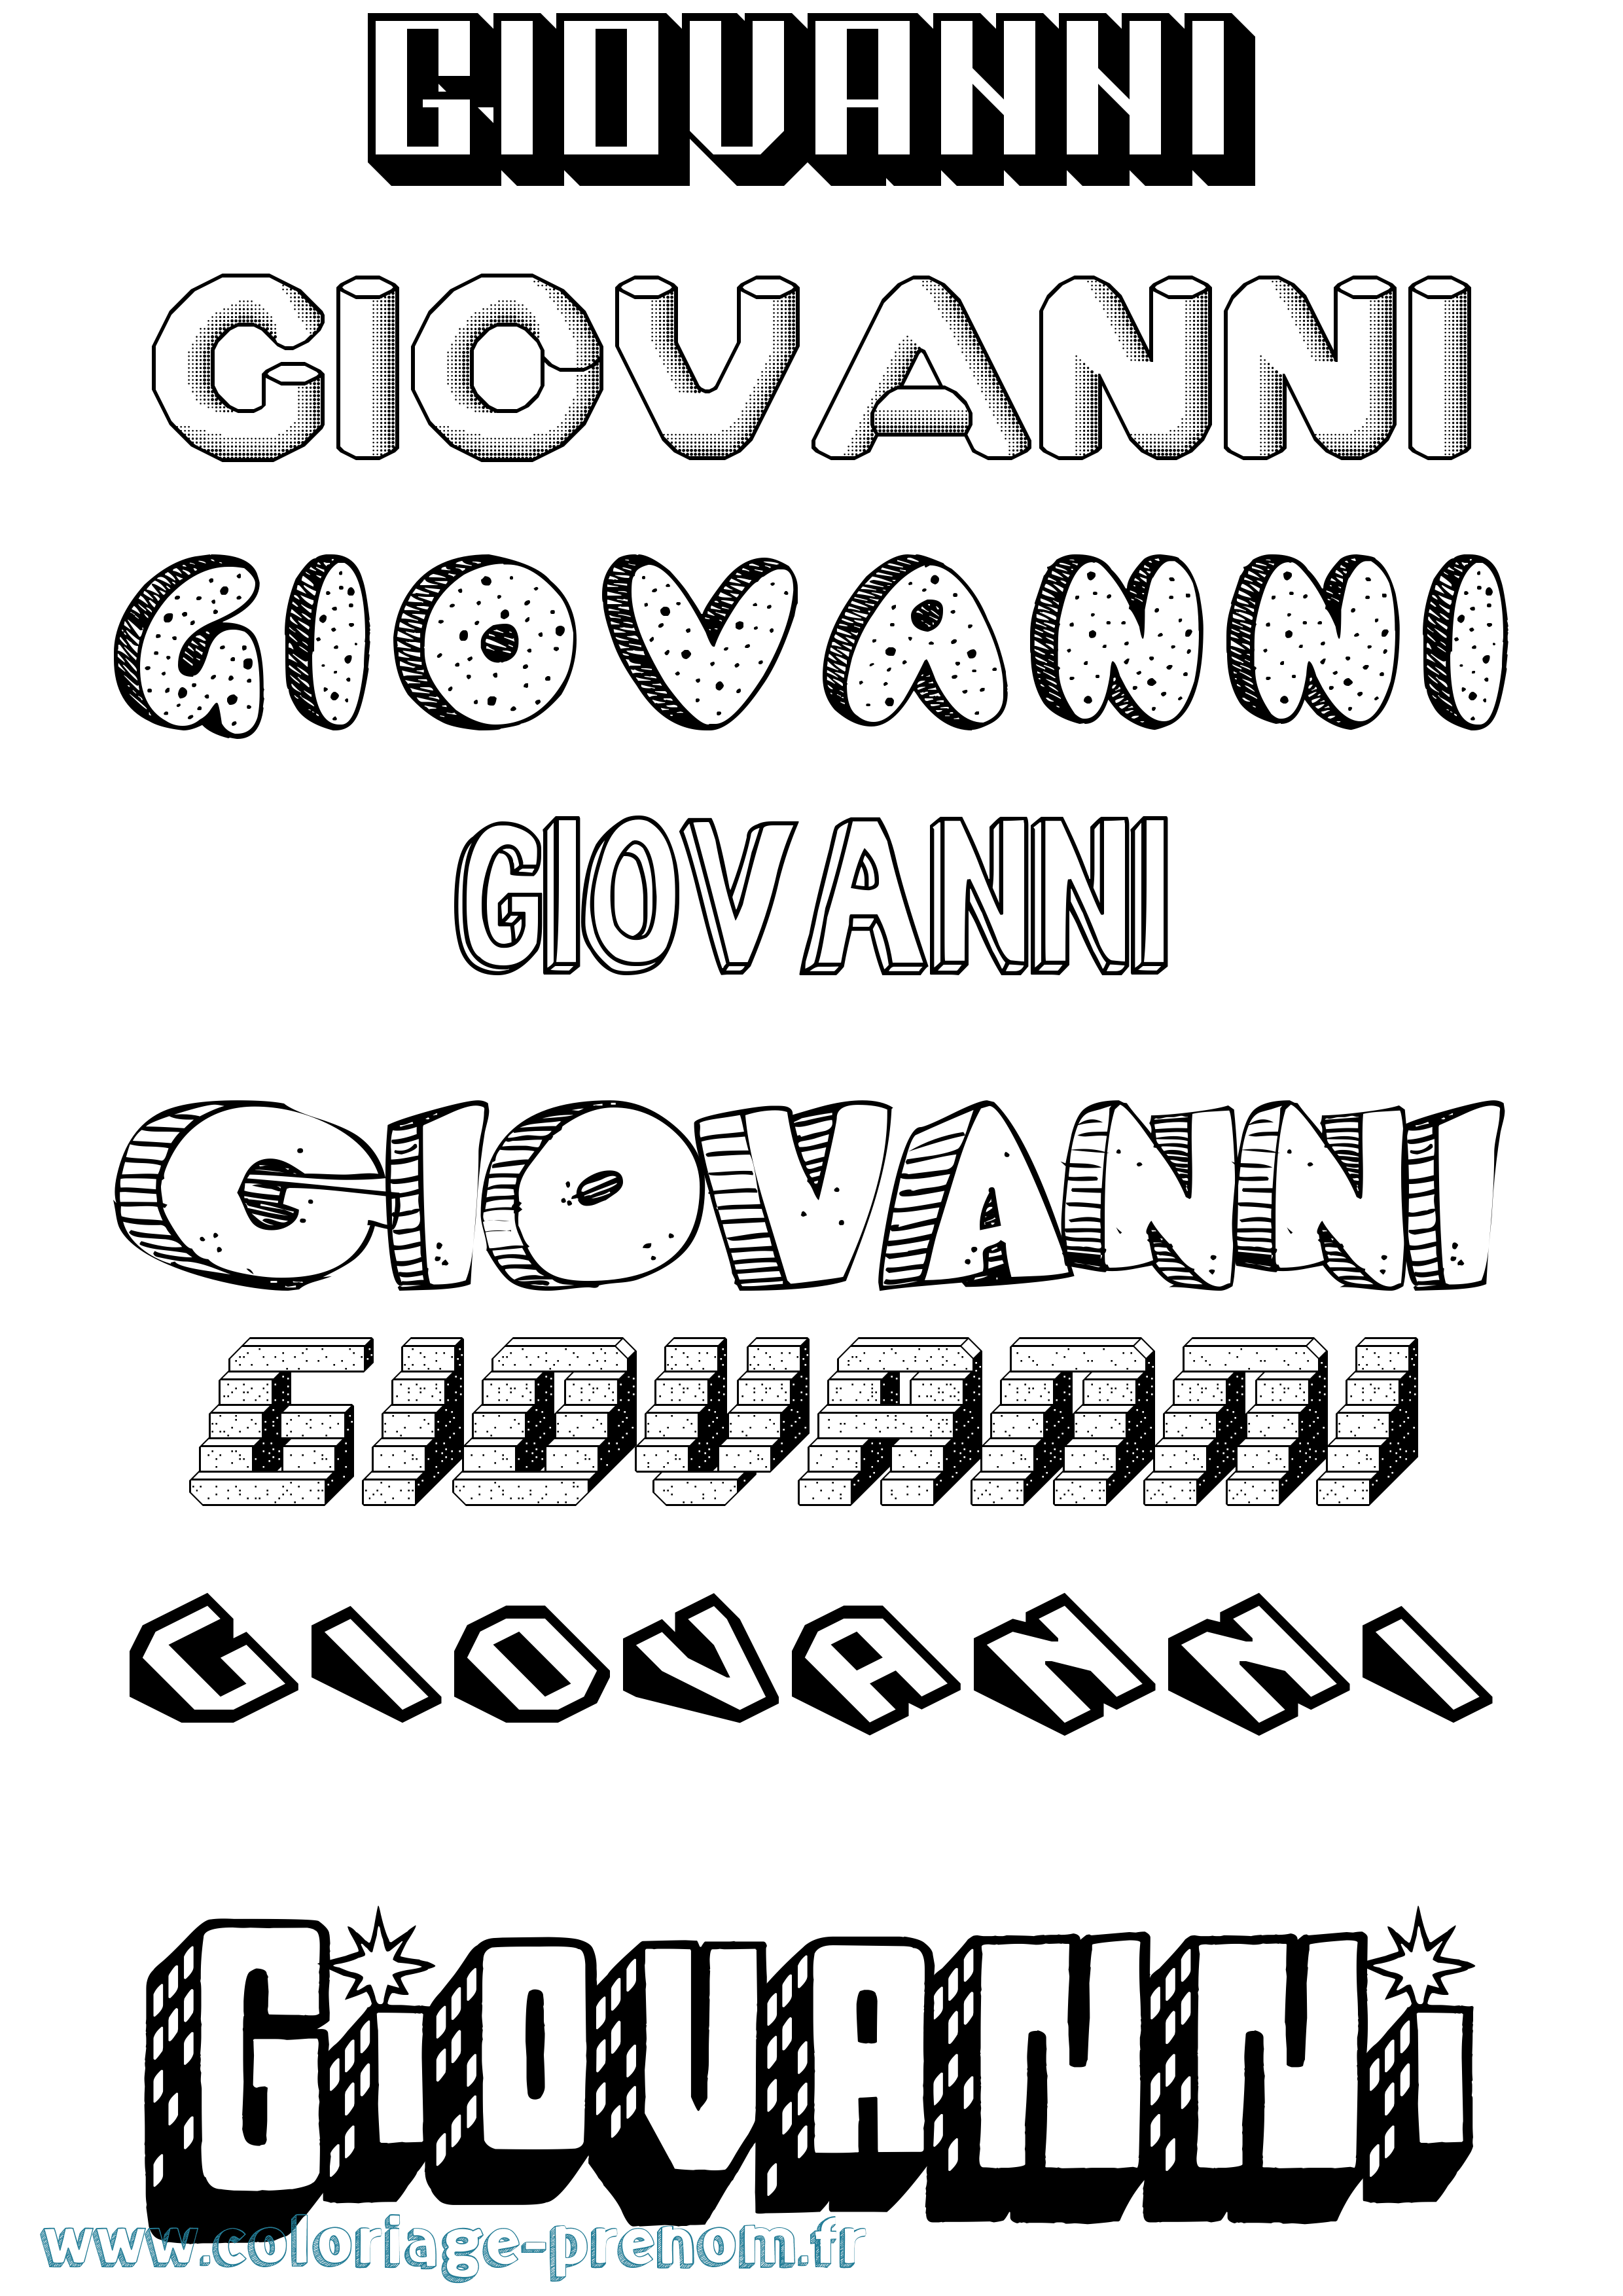 Coloriage prénom Giovanni